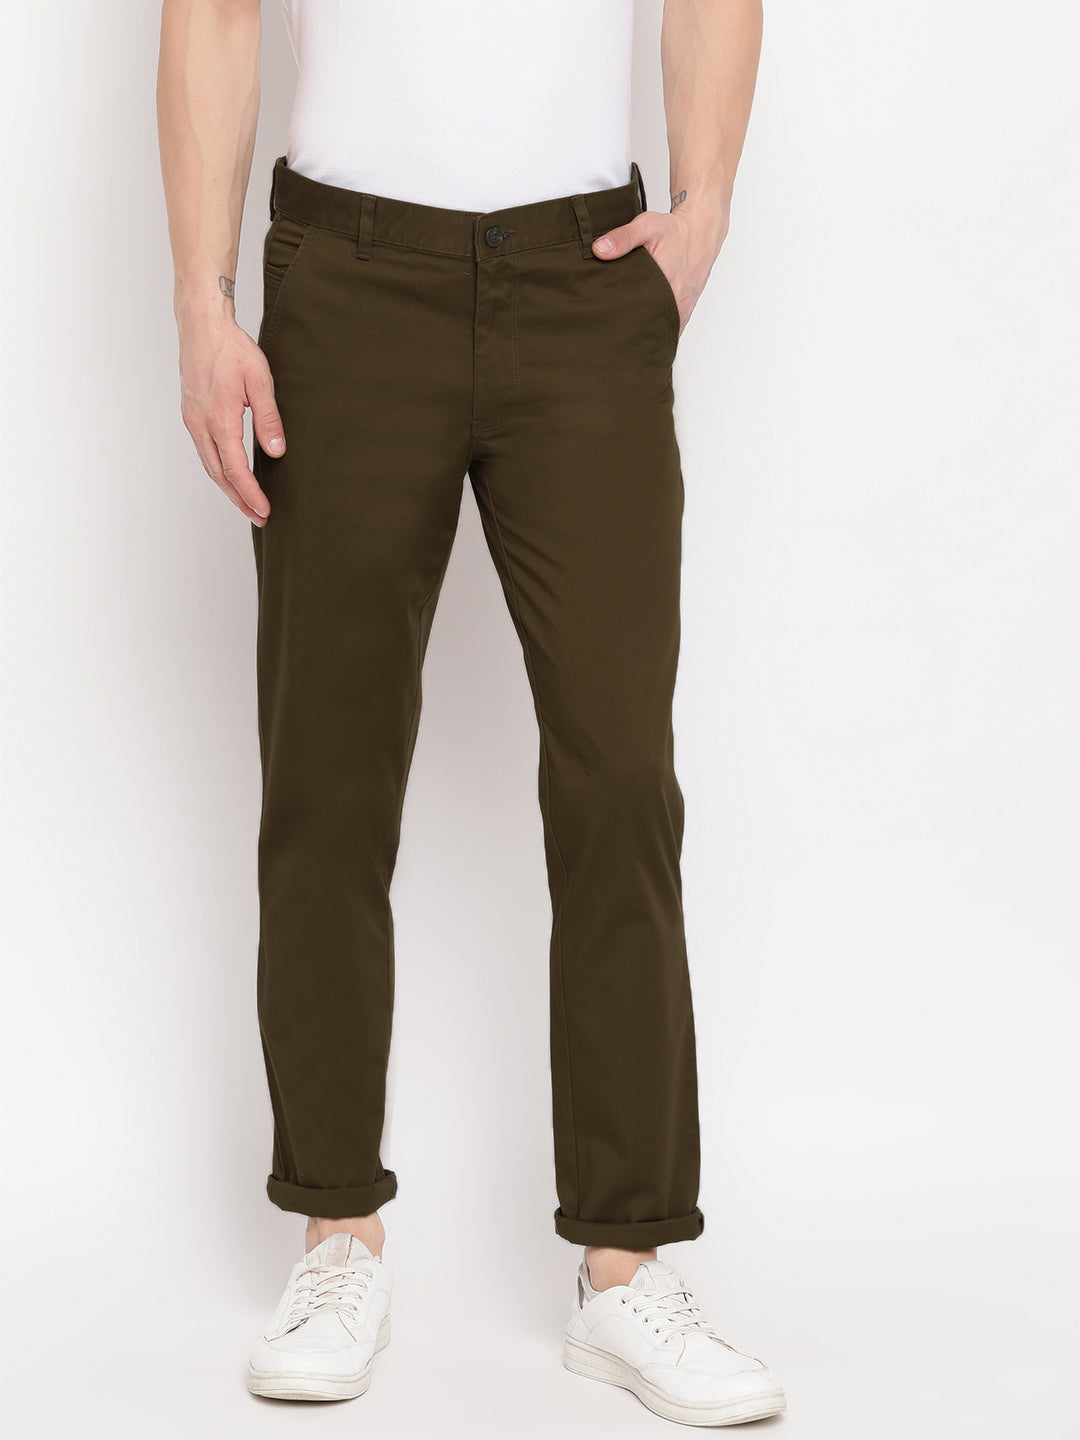 Men's Bottom Wear | Richlook Online Store